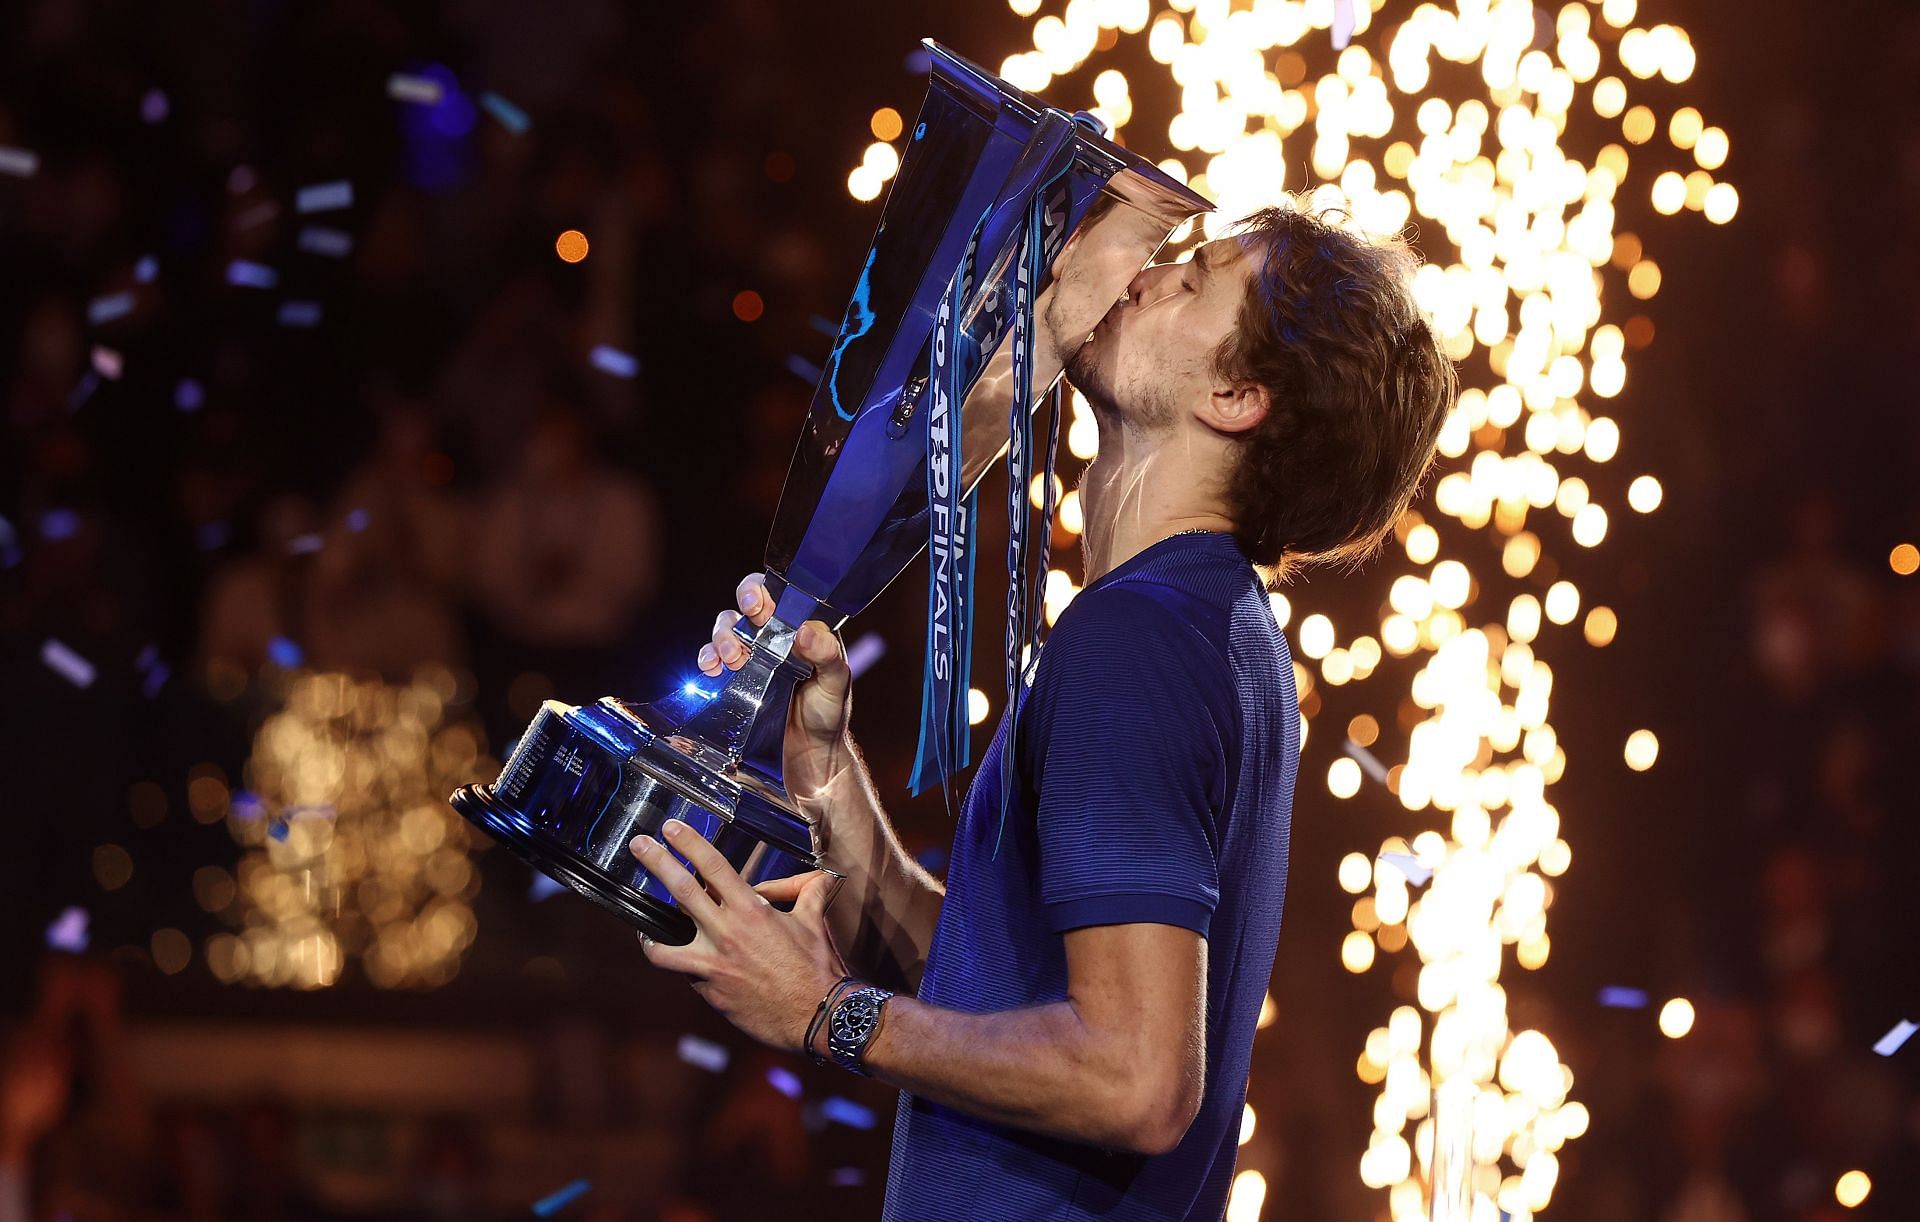 Alexander Zverev won the 2021 Nitto ATP World Tour Finals